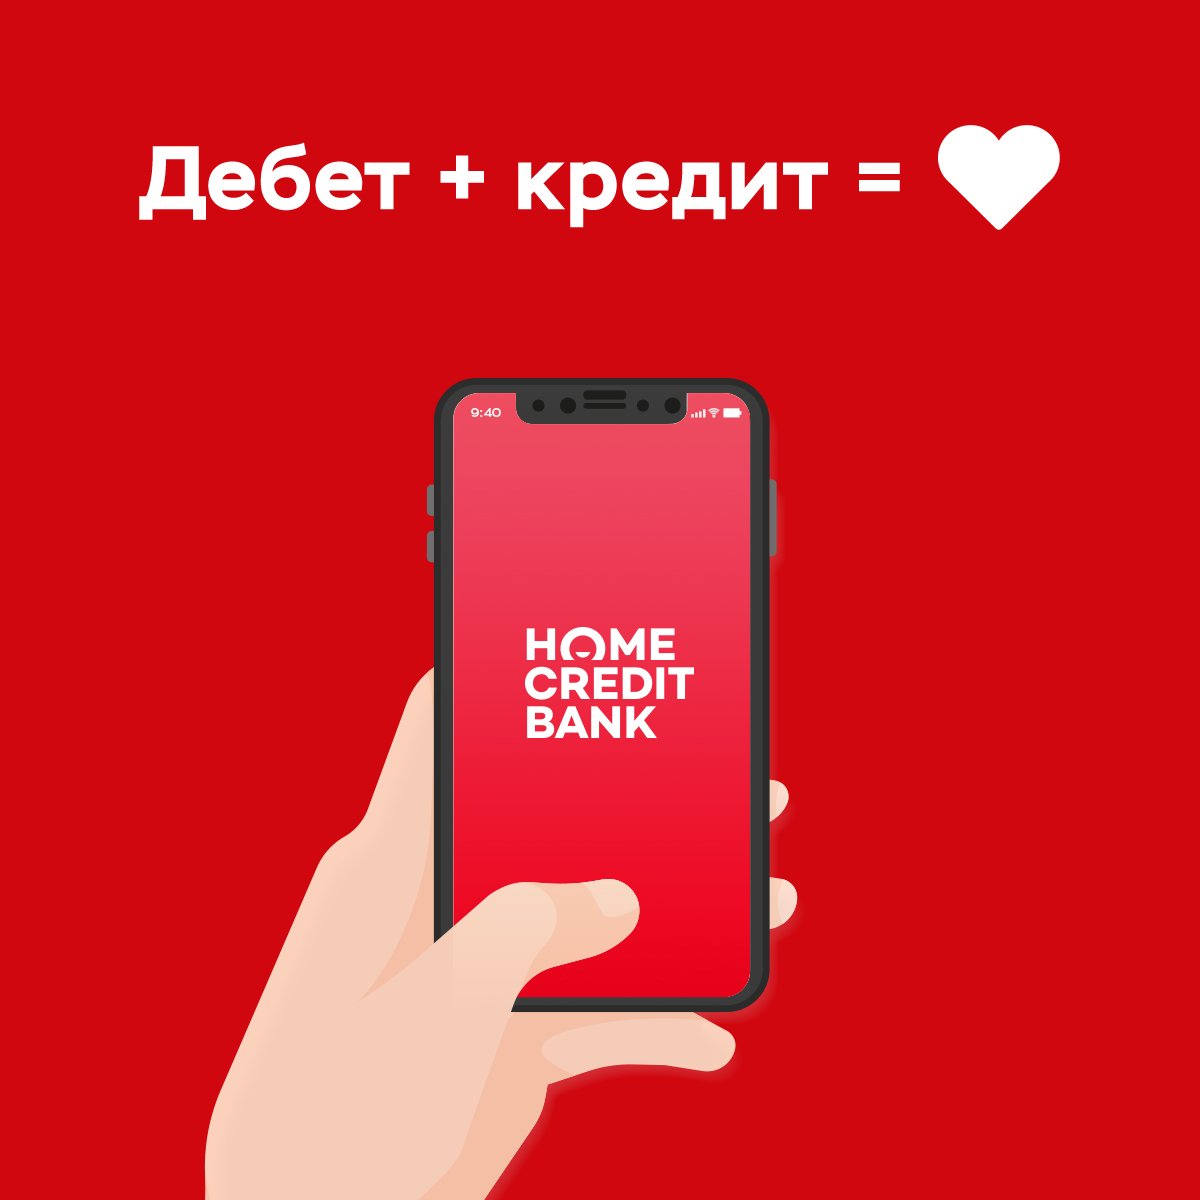 Установить хоум банк на телефоне. Хоум банк приложение. Мобильное приложение банка Home credit. Хоум кредит банк. Мобильный банк хоум кредит.